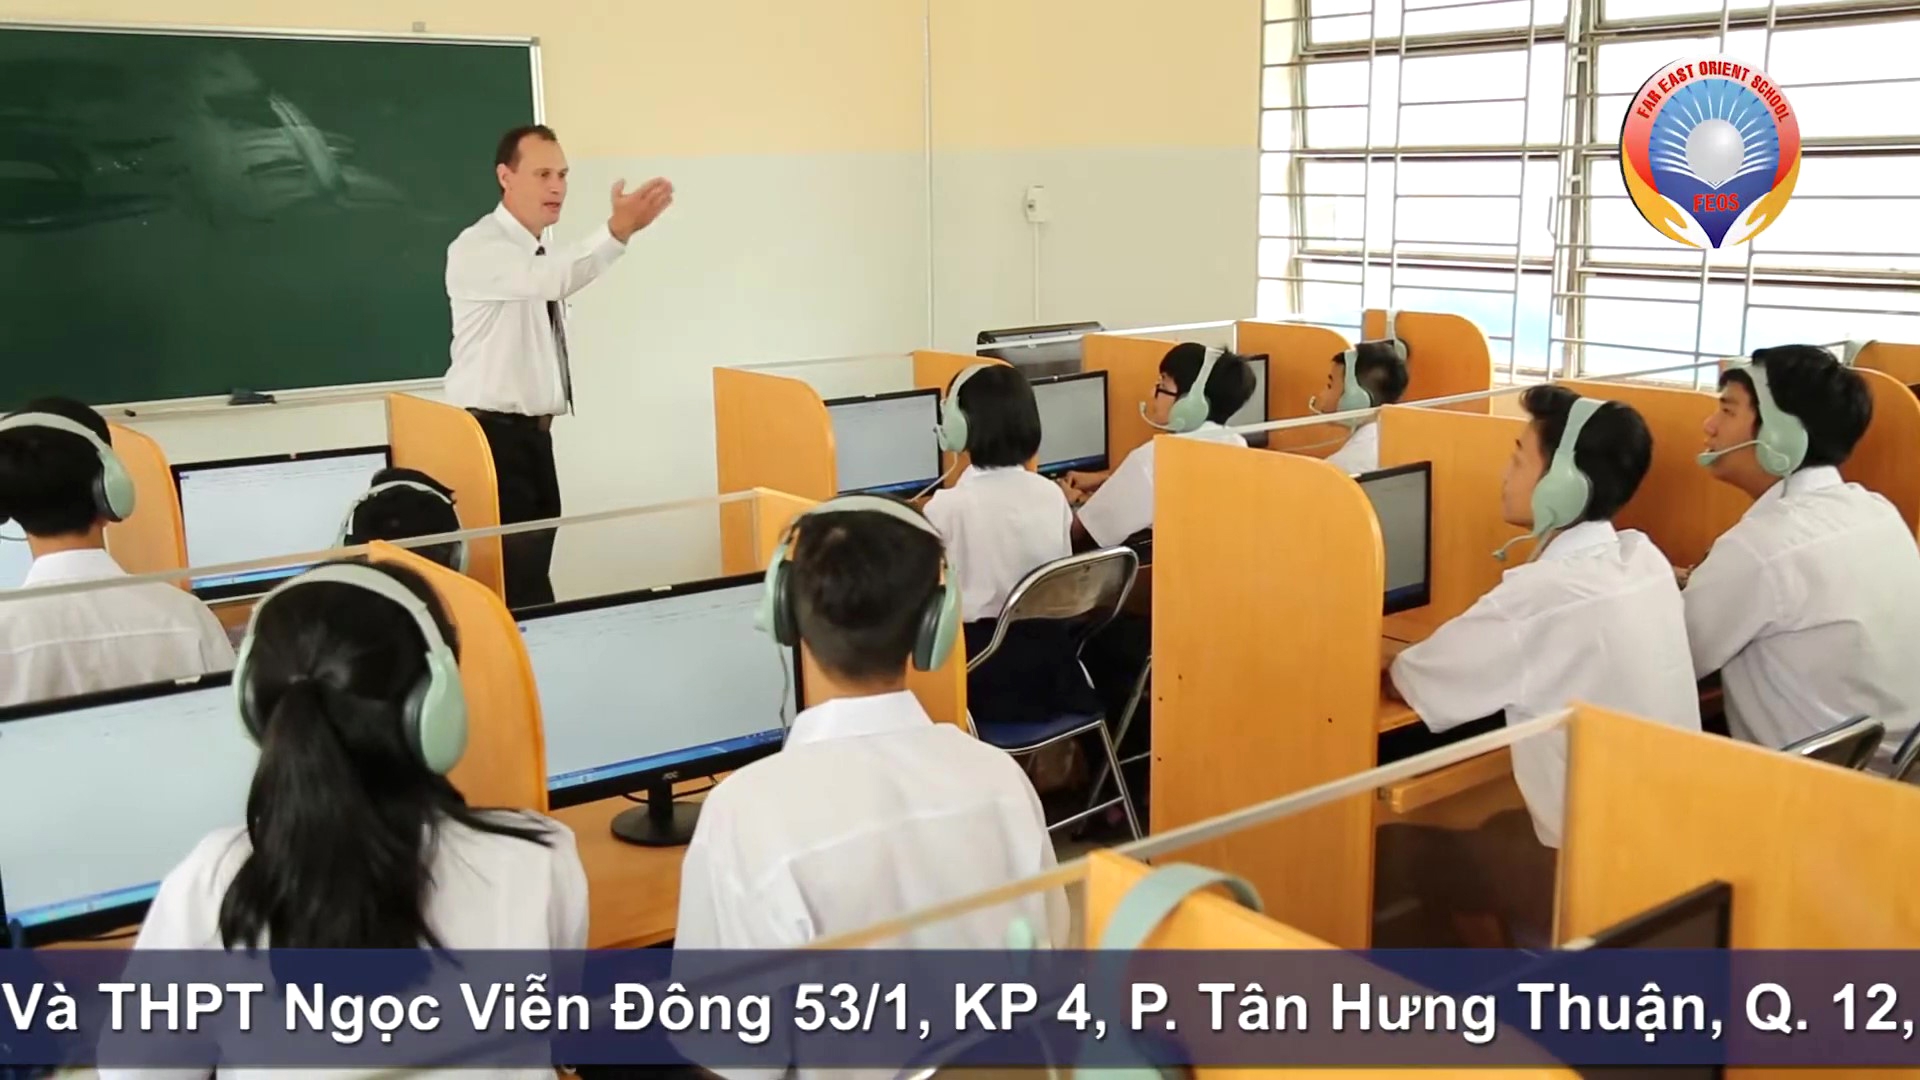 Phong Vi Tinh Truong Thcs Thpt Ngoc Vien Dong